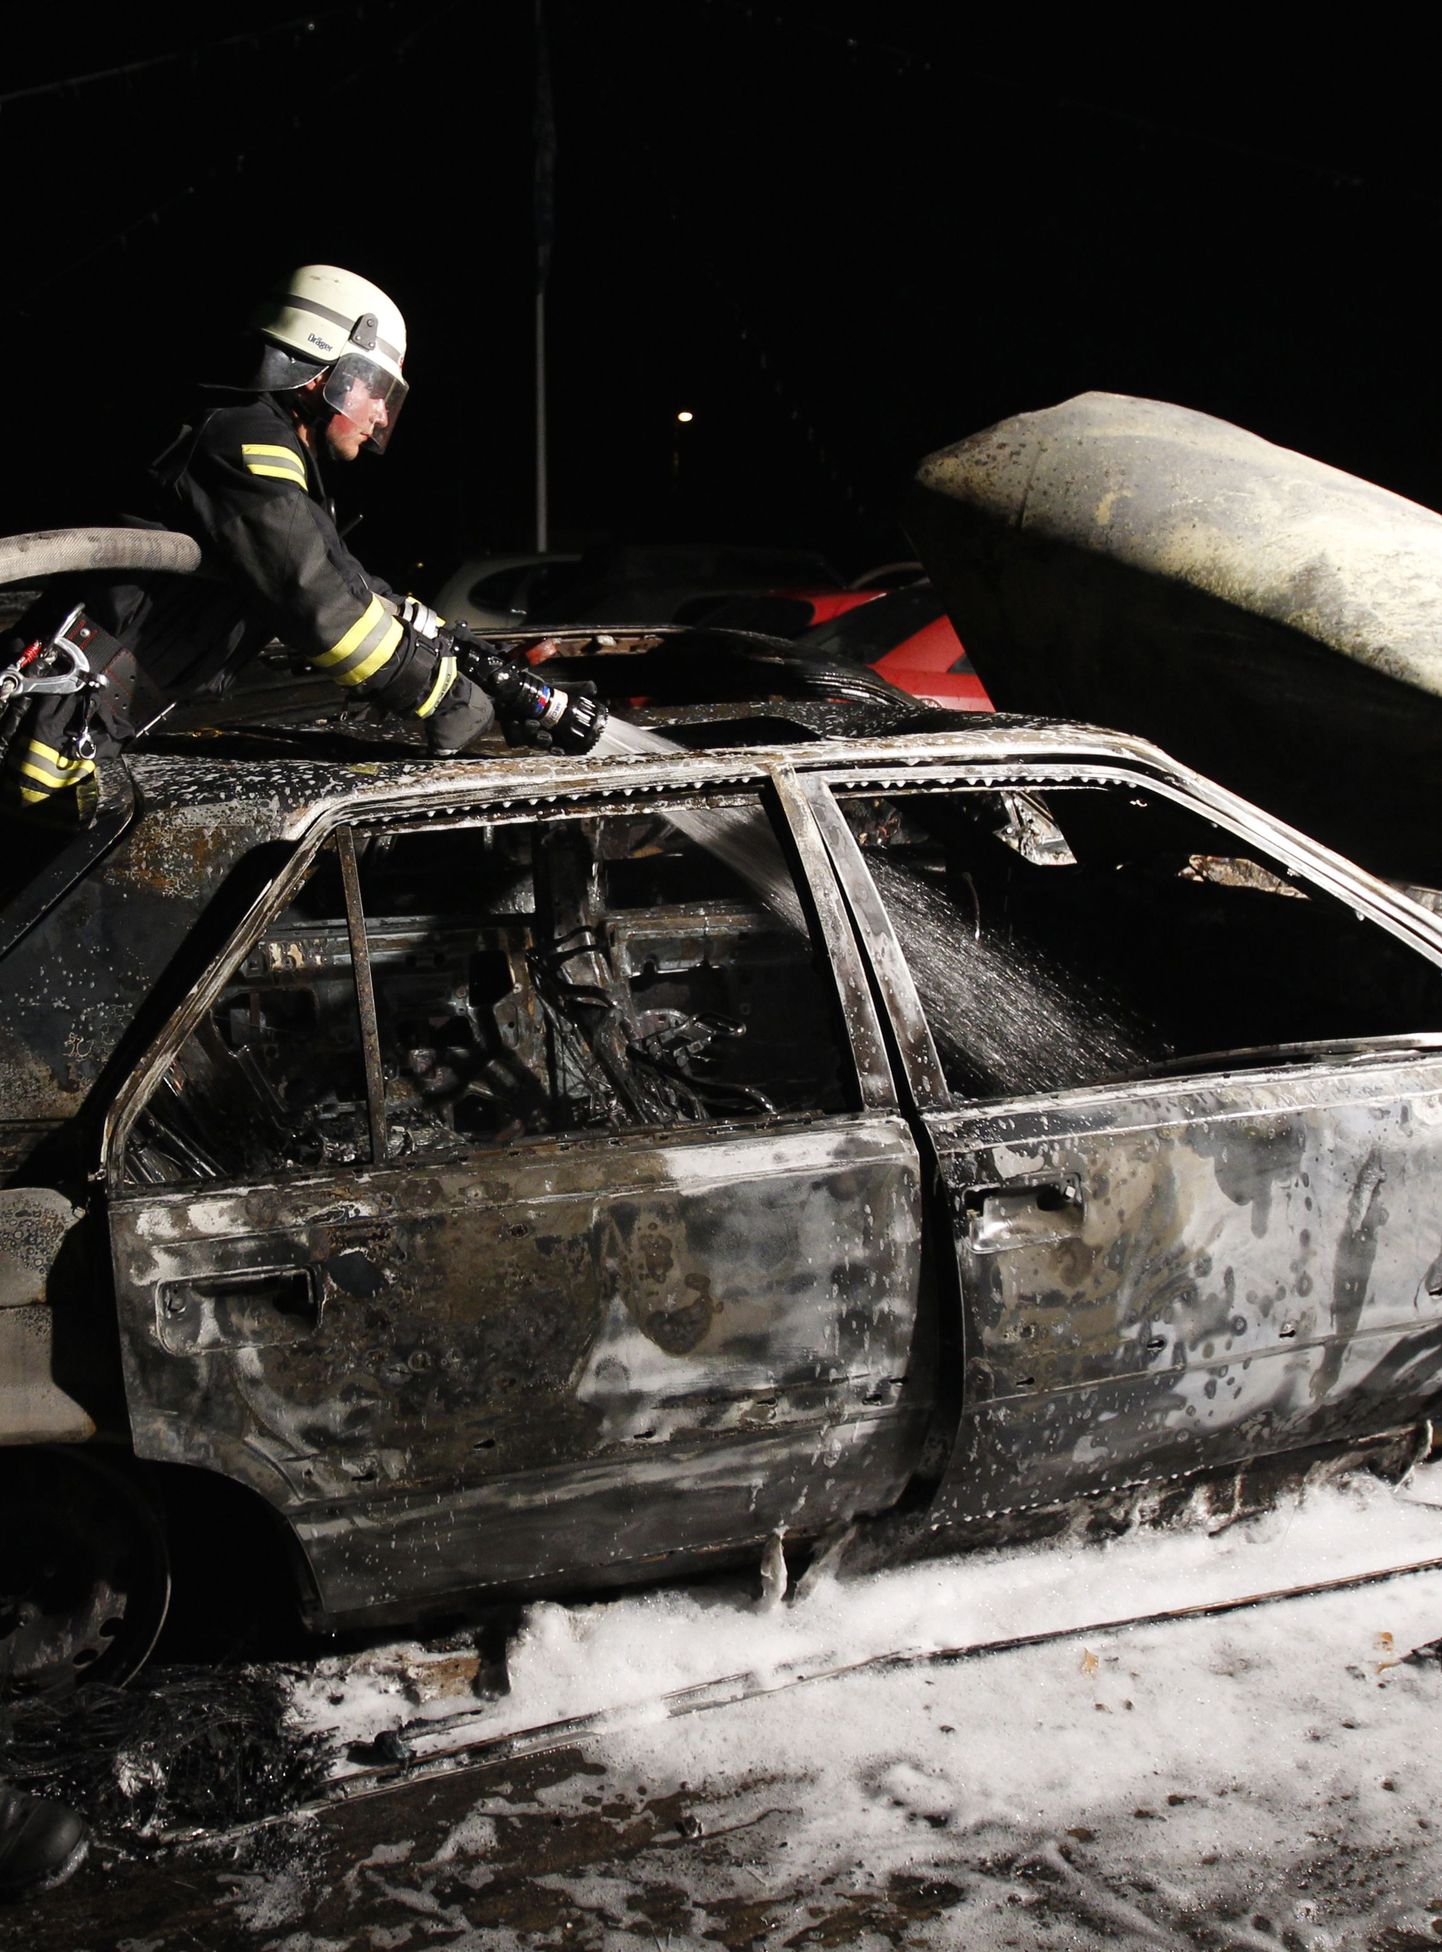 Berliini tuletõrjuja selle aasta augustis kustutamas süüdatud autot.